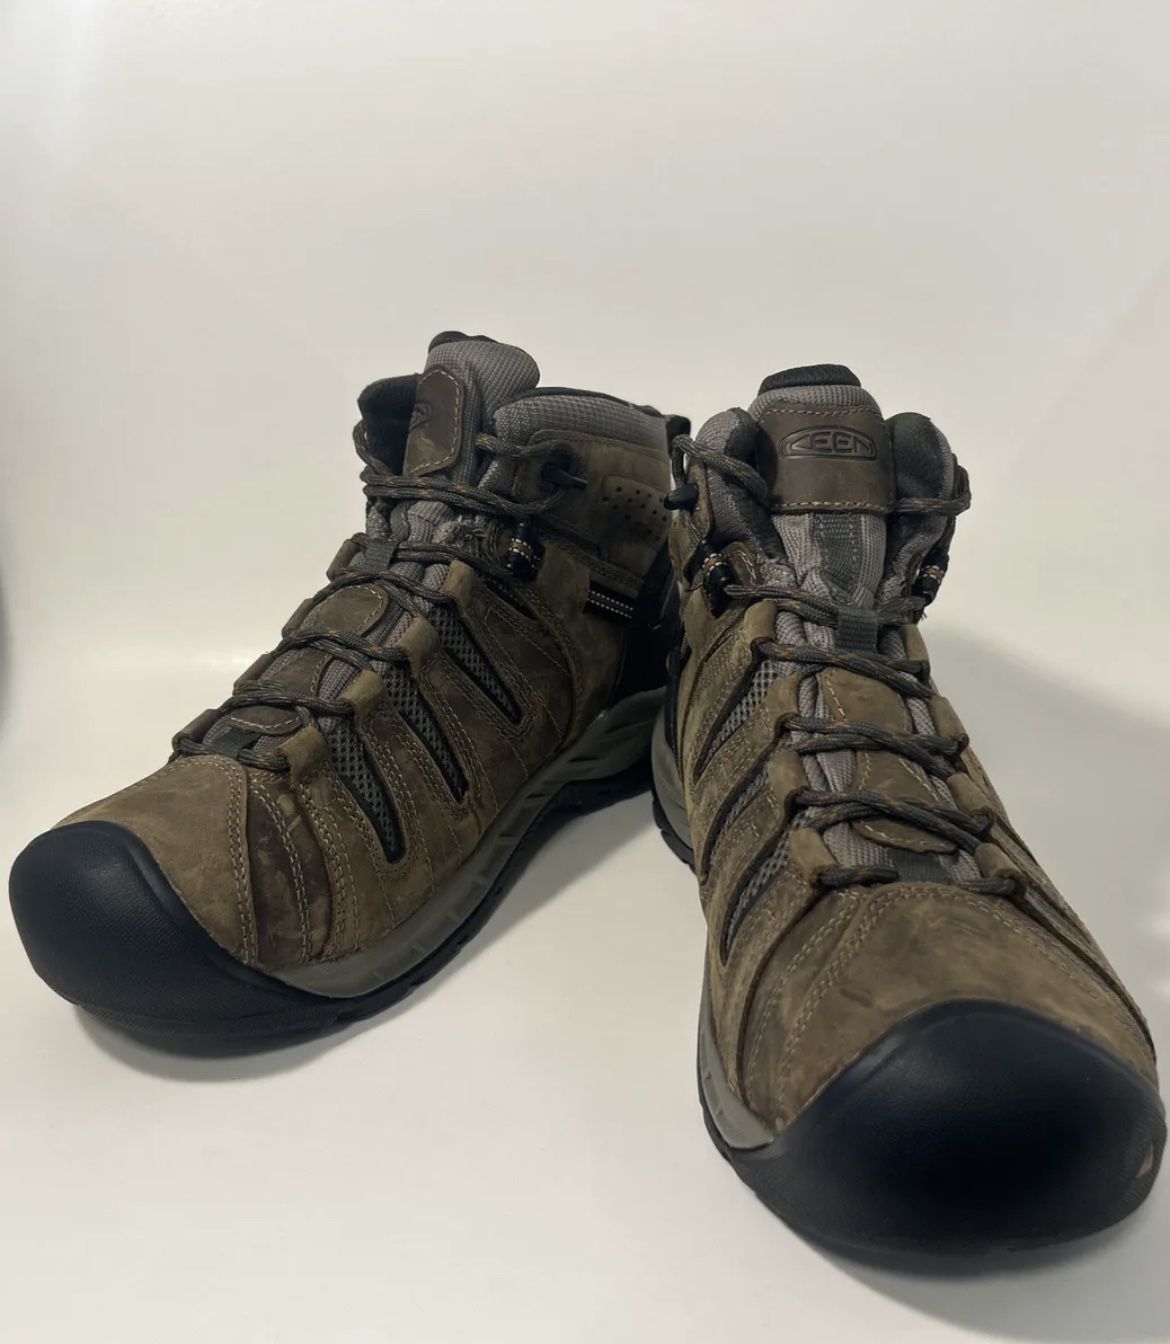 Size 11.5D - Men’s Keen Flint II Mid Waterproof Soft Toe Work Boots 1025613